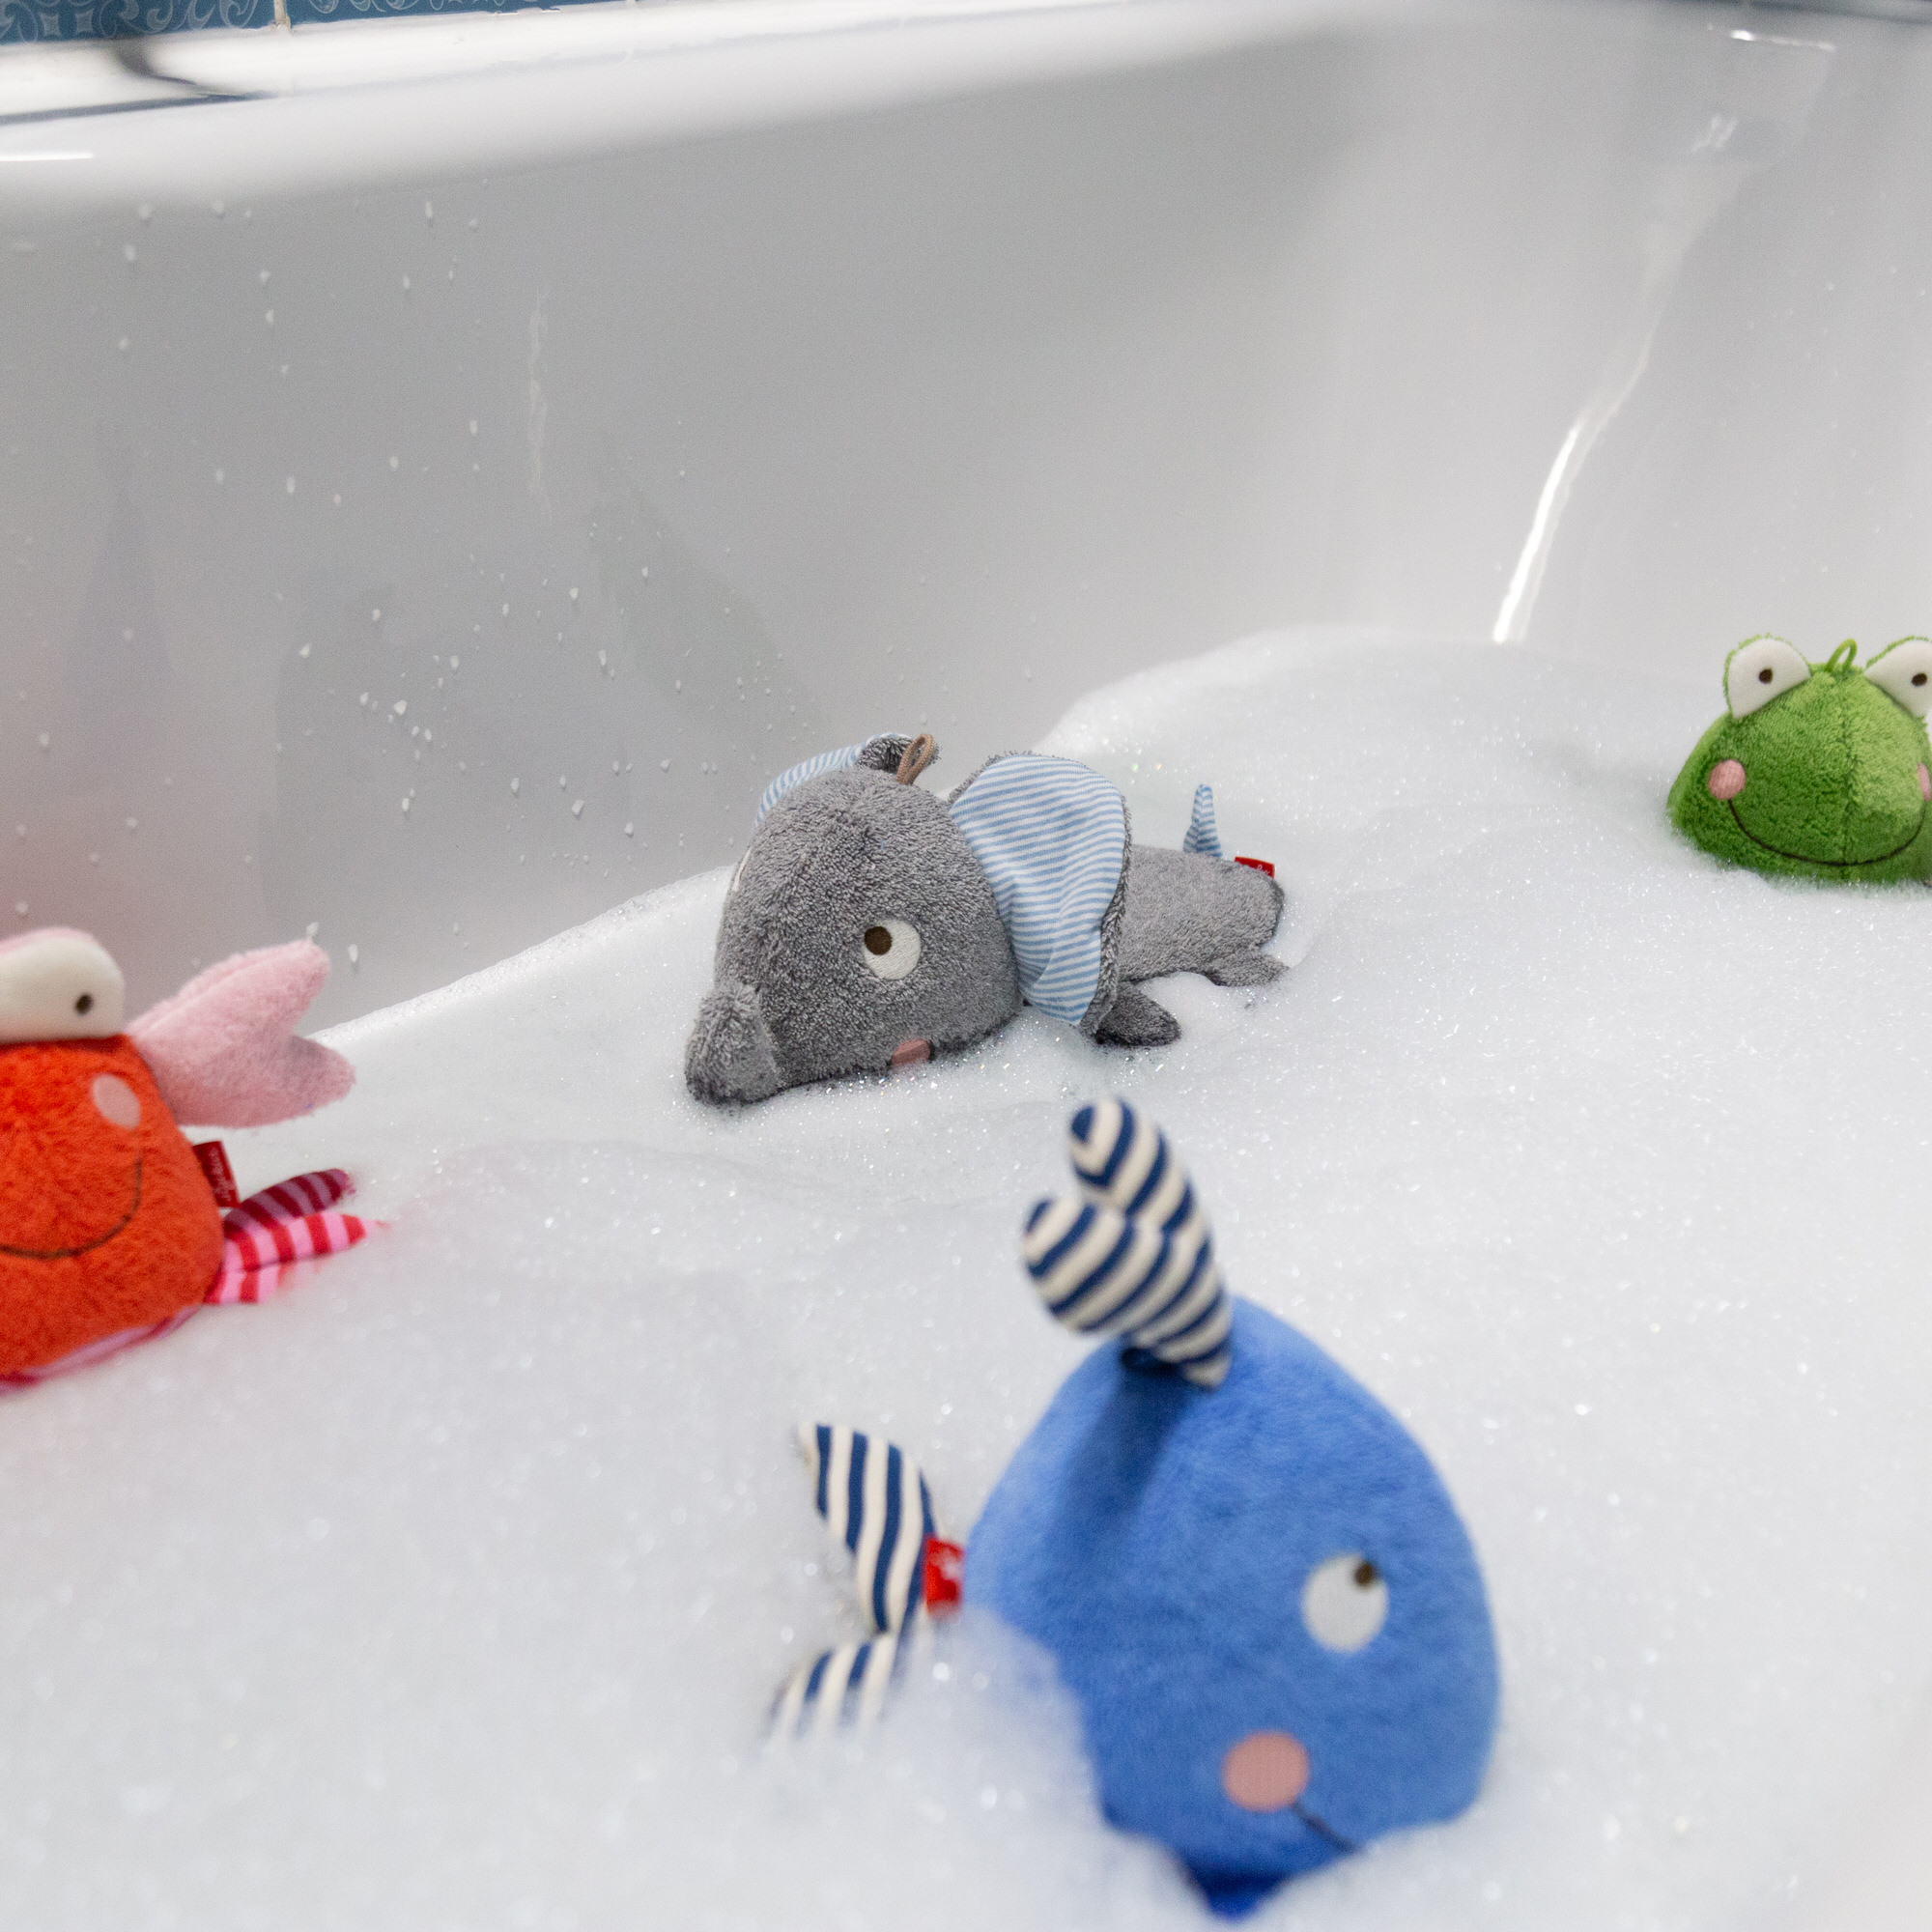 Baby bath soft toy elephant, terry cloth